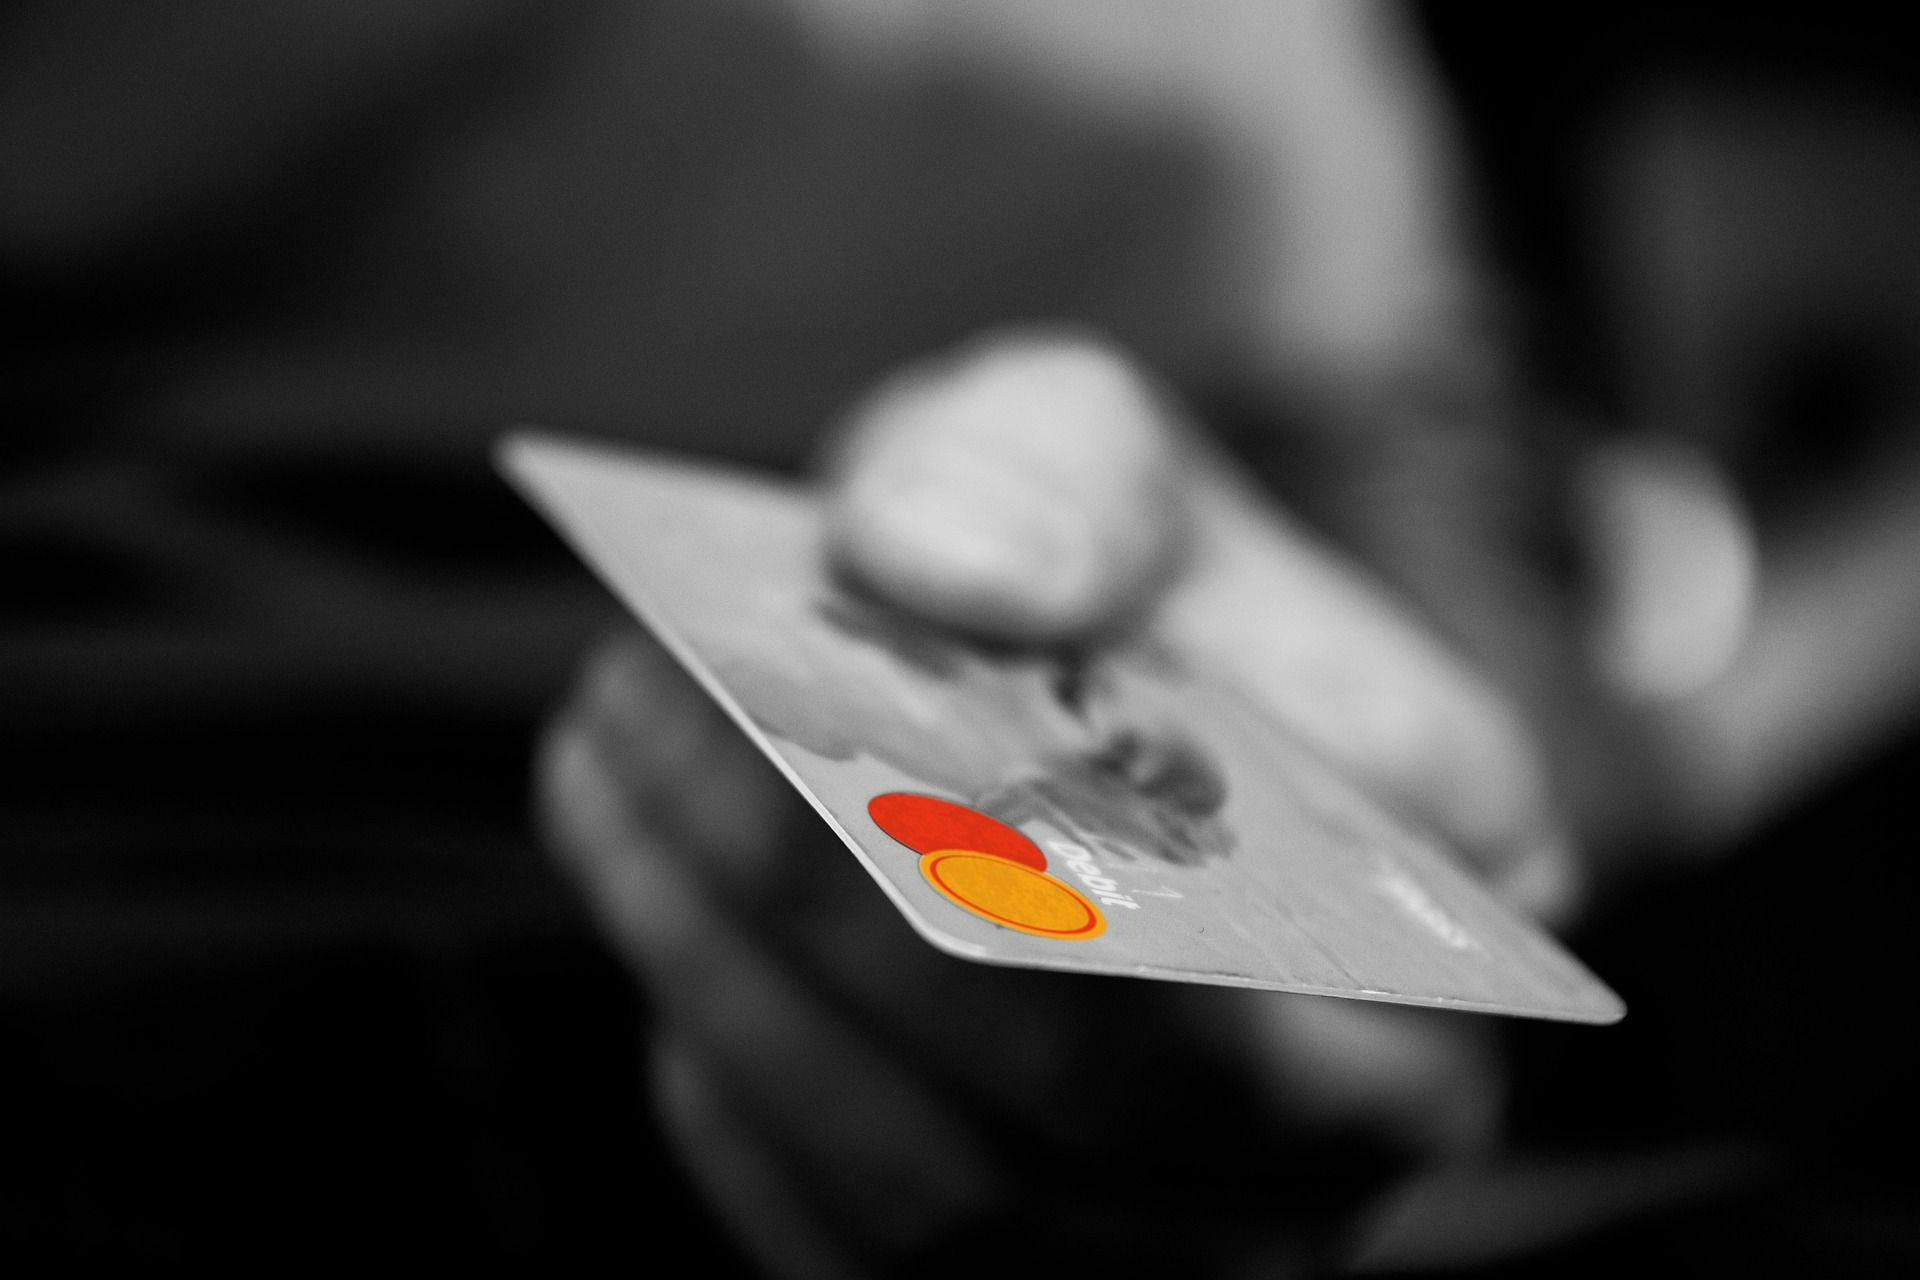 En hånd som holder et kredittkort, og mannen som holder det har fått laveste rente på kredittkort.